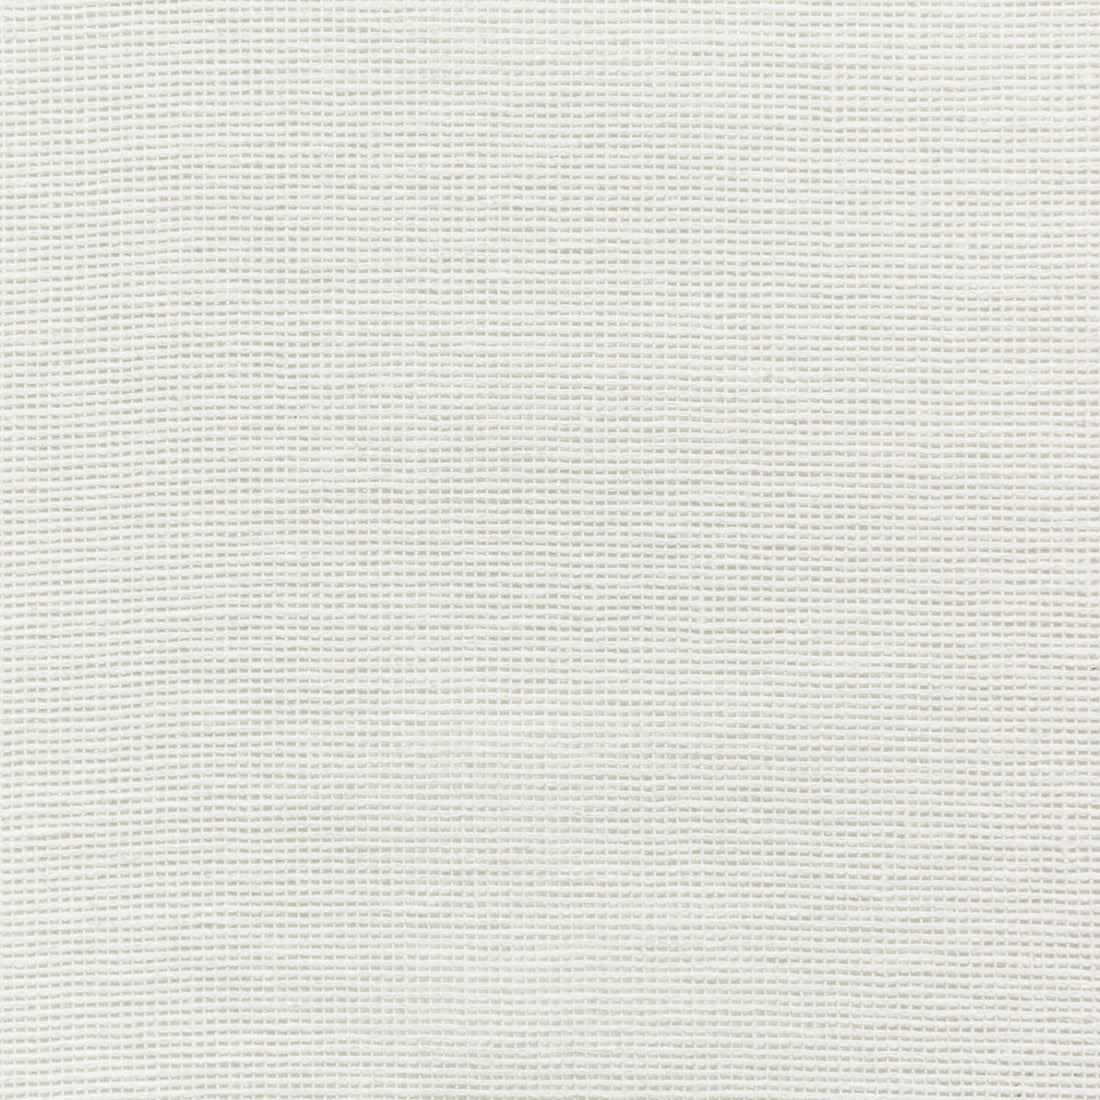 Kravet Basics fabric in 4675-1 color - pattern 4675.1.0 - by Kravet Basics